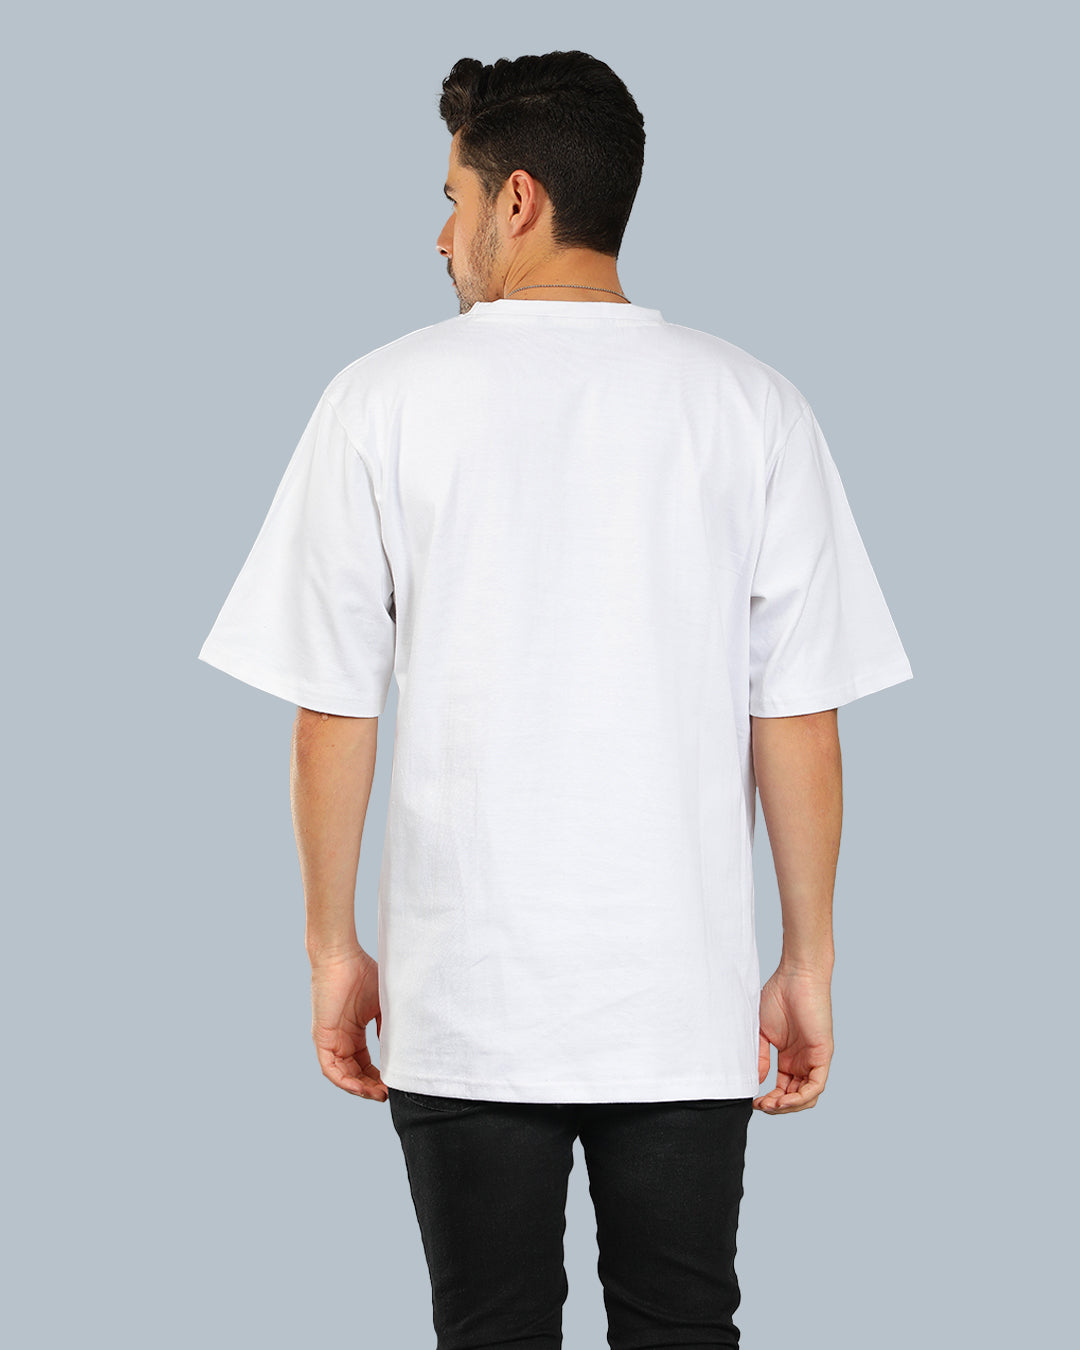 Combo Pack Of 2 | White Oversized T-shirt + Black Cargo